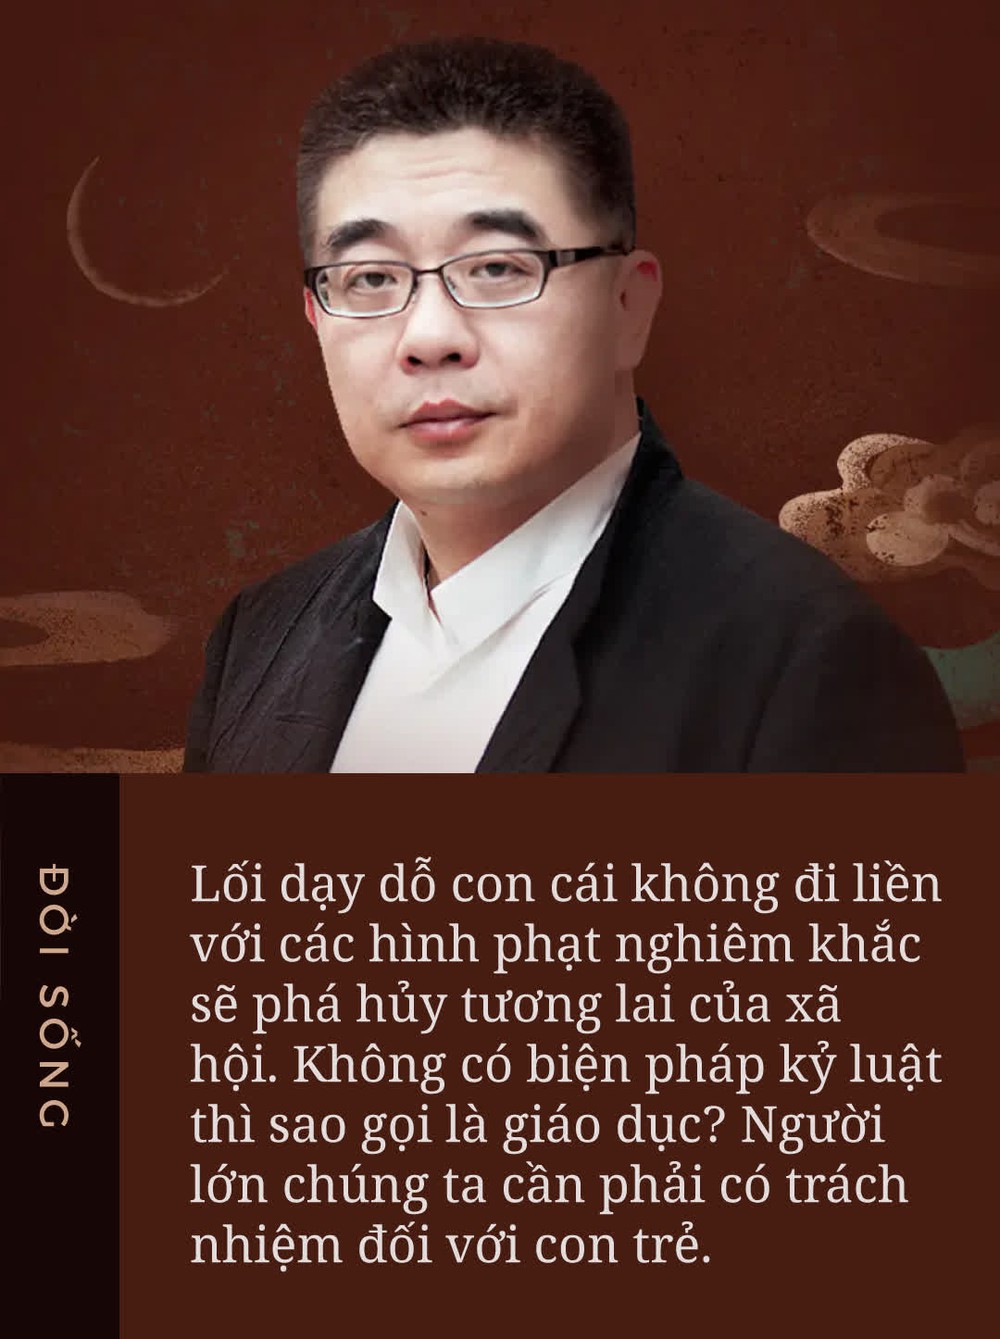 TS Vũ Thu Hương: Nhiều cha mẹ Việt sai trầm trọng vì 1 tư tưởng dạy con đã bị biến tướng, bắt đầu từ năm 2007-2008 - Ảnh 2.